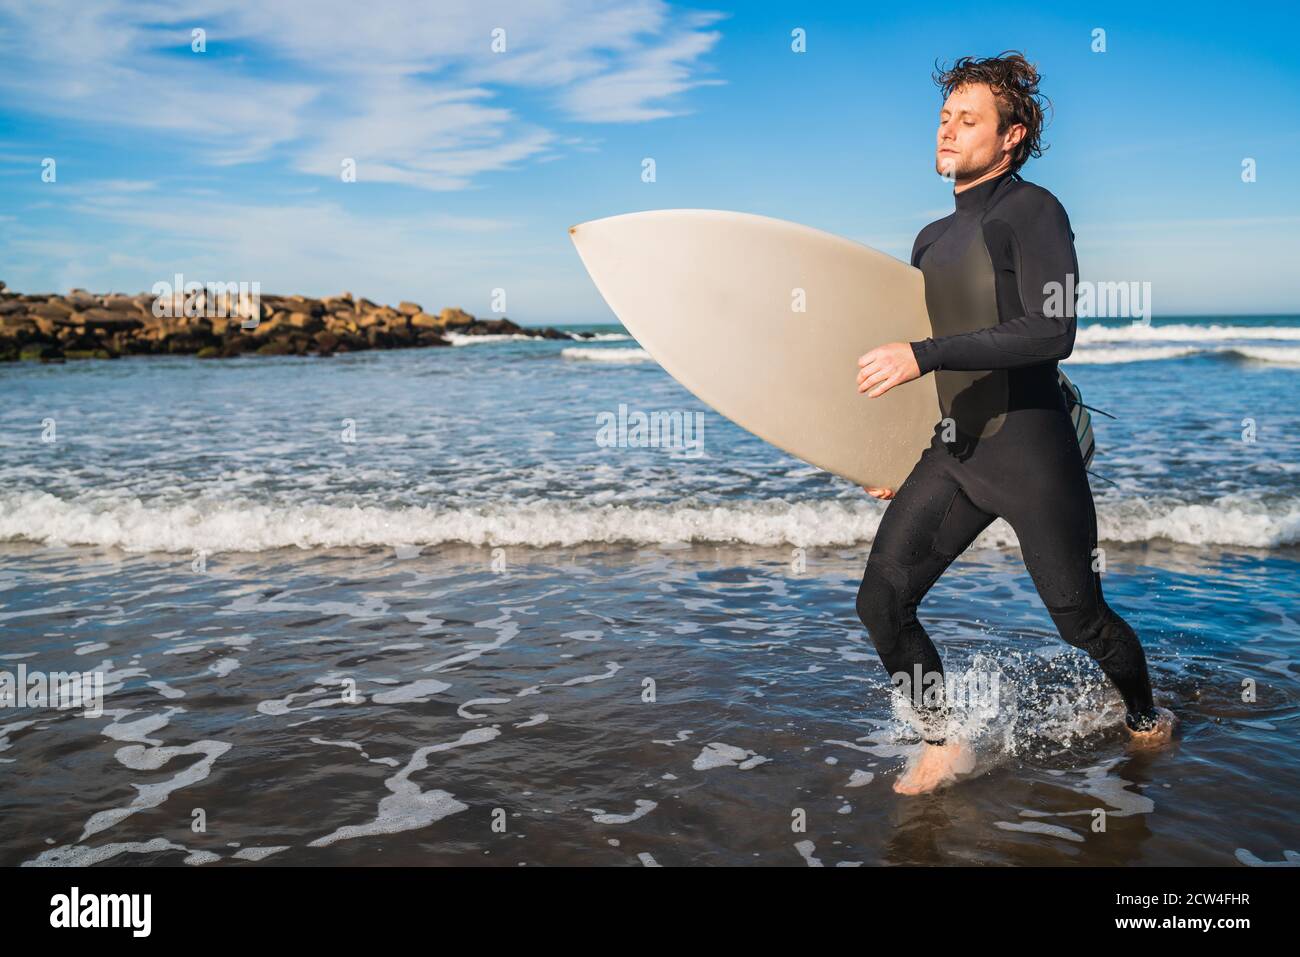 Ritratto di giovane surfista che lascia l'acqua con tavola da surf sotto il braccio. Concetto di sport e sport acquatici. Foto Stock